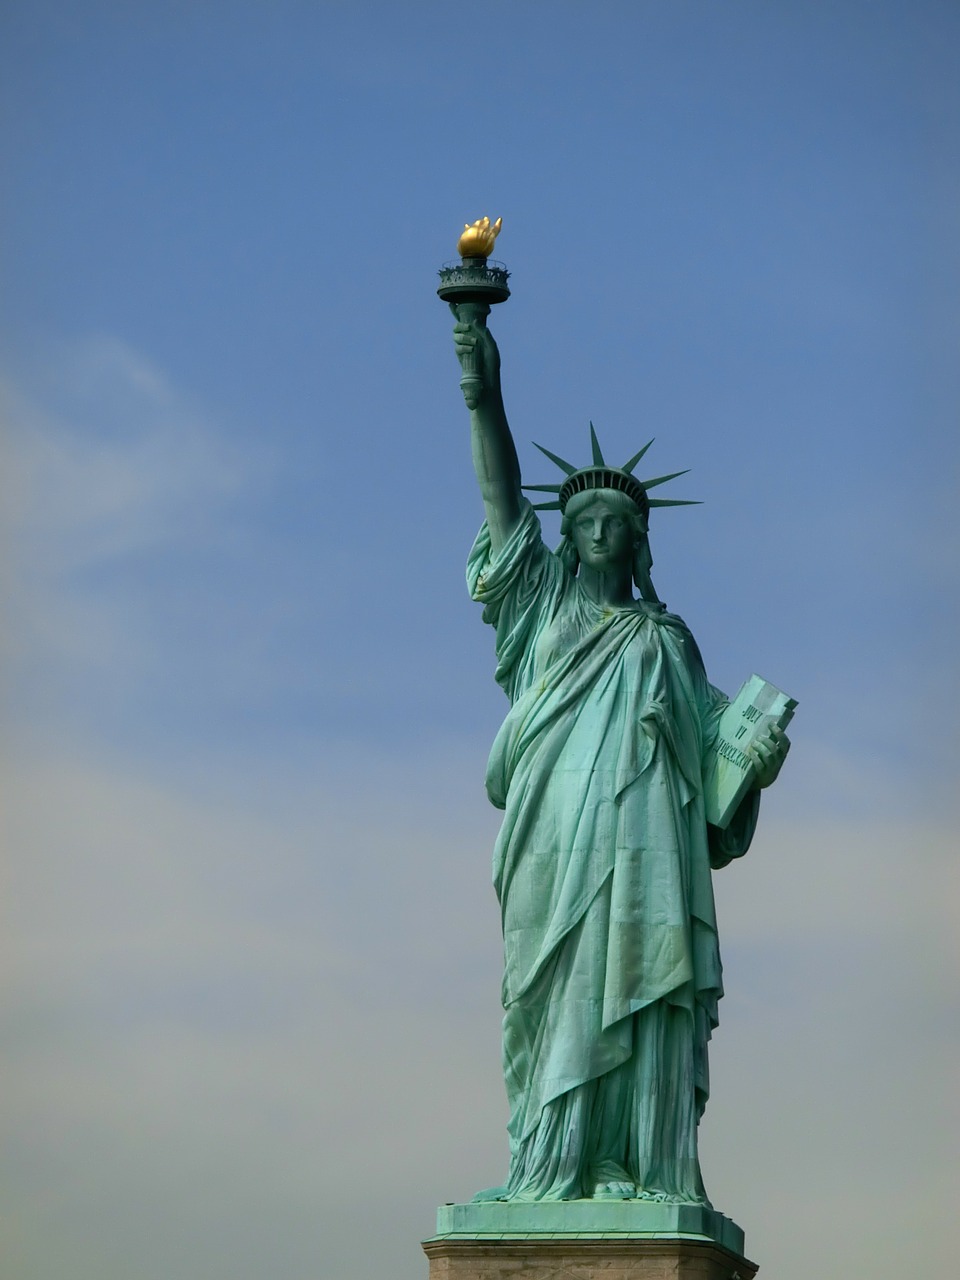 Laisvės Statula, Niujorkas, Paminklas, Niujorkas, Usa, Manhatanas, Laisvės Statula, Karalienė Laisvės, Turistų Atrakcijos, Ny